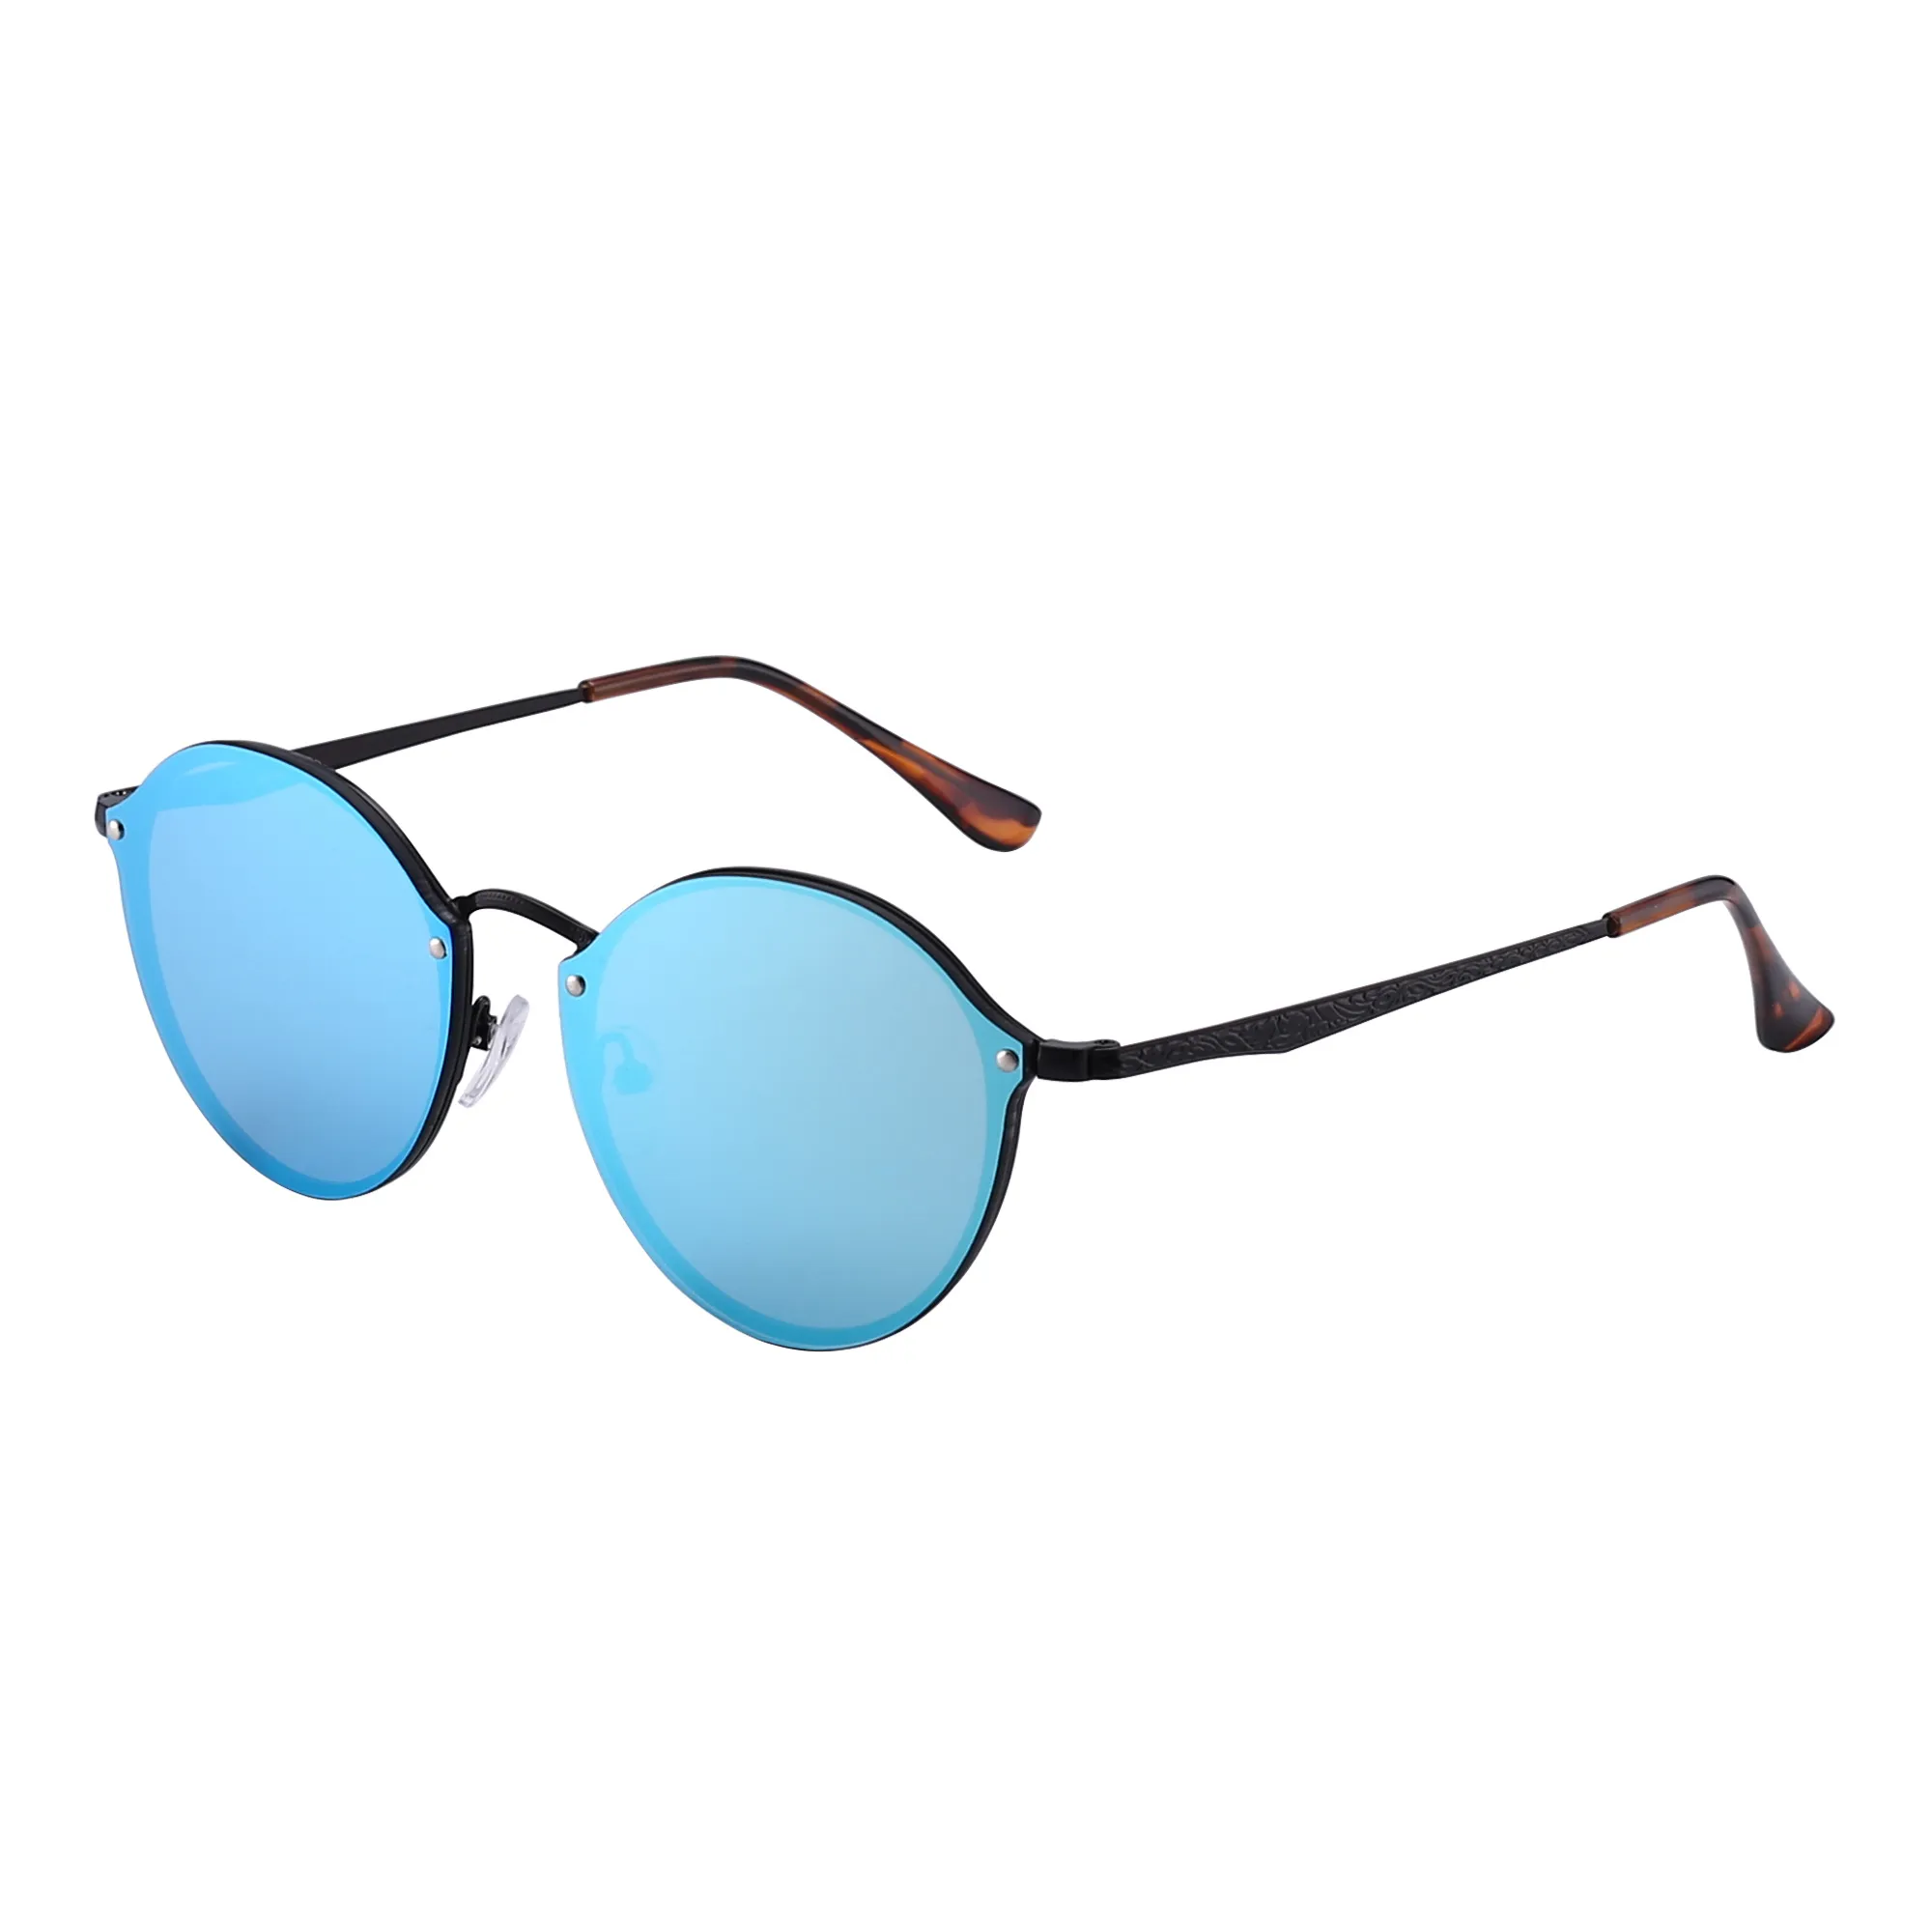 Occhiali da sole polarizzati di lusso occhiali da sole da donna carfia 5288 occhiali da sole ovali firmati da uomo Occhiali in resina con protezione UV307v